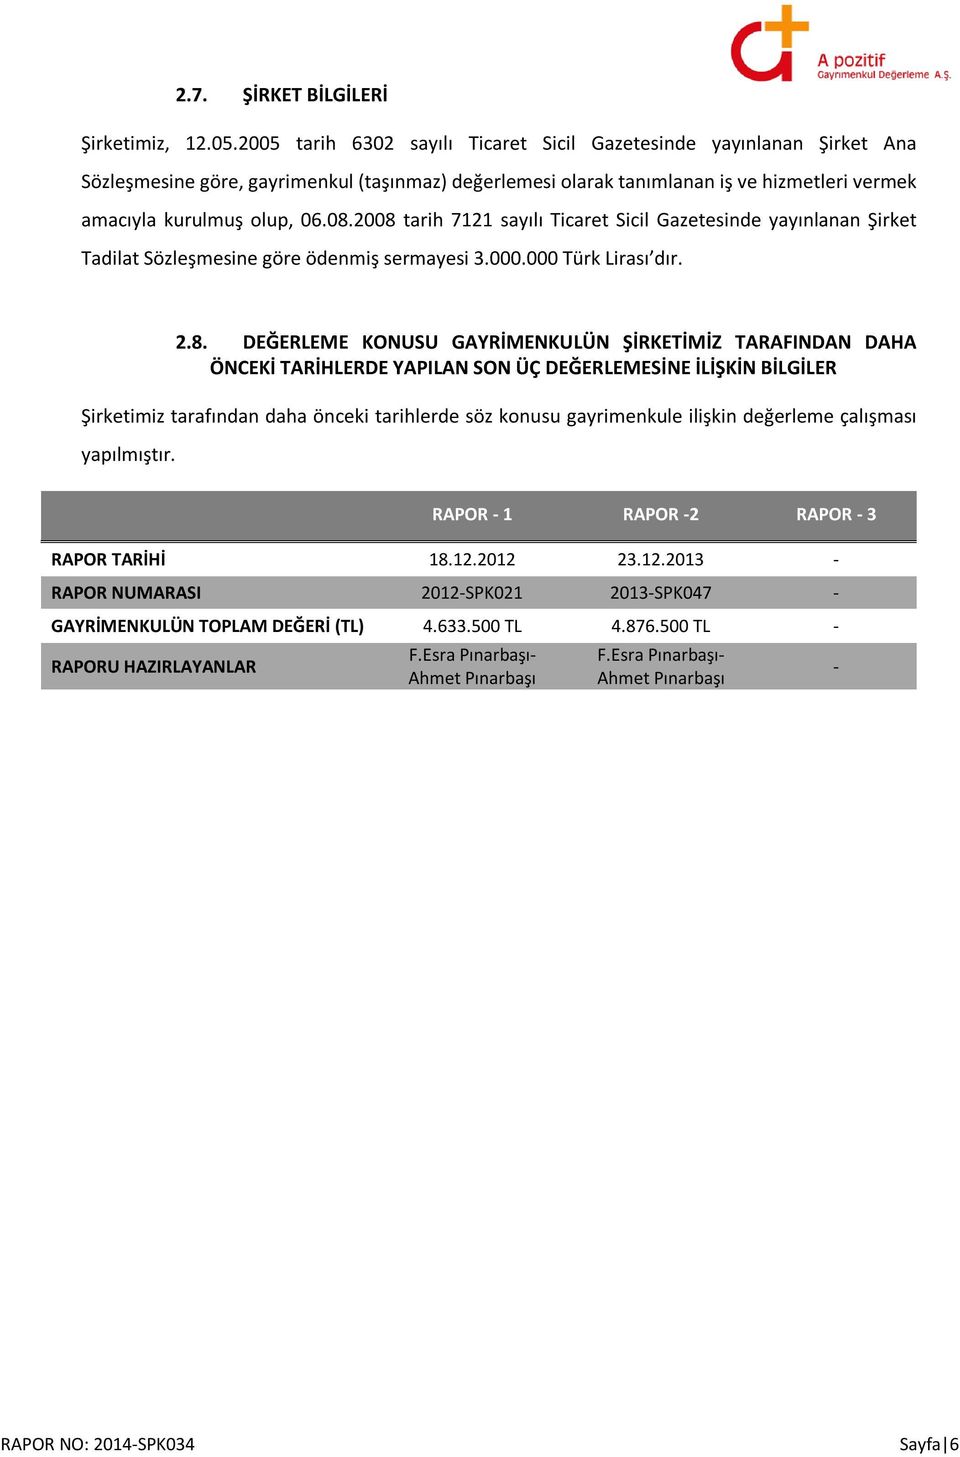 2008 tarih 7121 sayılı Ticaret Sicil Gazetesinde yayınlanan Şirket Tadilat Sözleşmesine göre ödenmiş sermayesi 3.000.000 Türk Lirası dır. 2.8. DEĞERLEME KONUSU GAYRİMENKULÜN ŞİRKETİMİZ TARAFINDAN